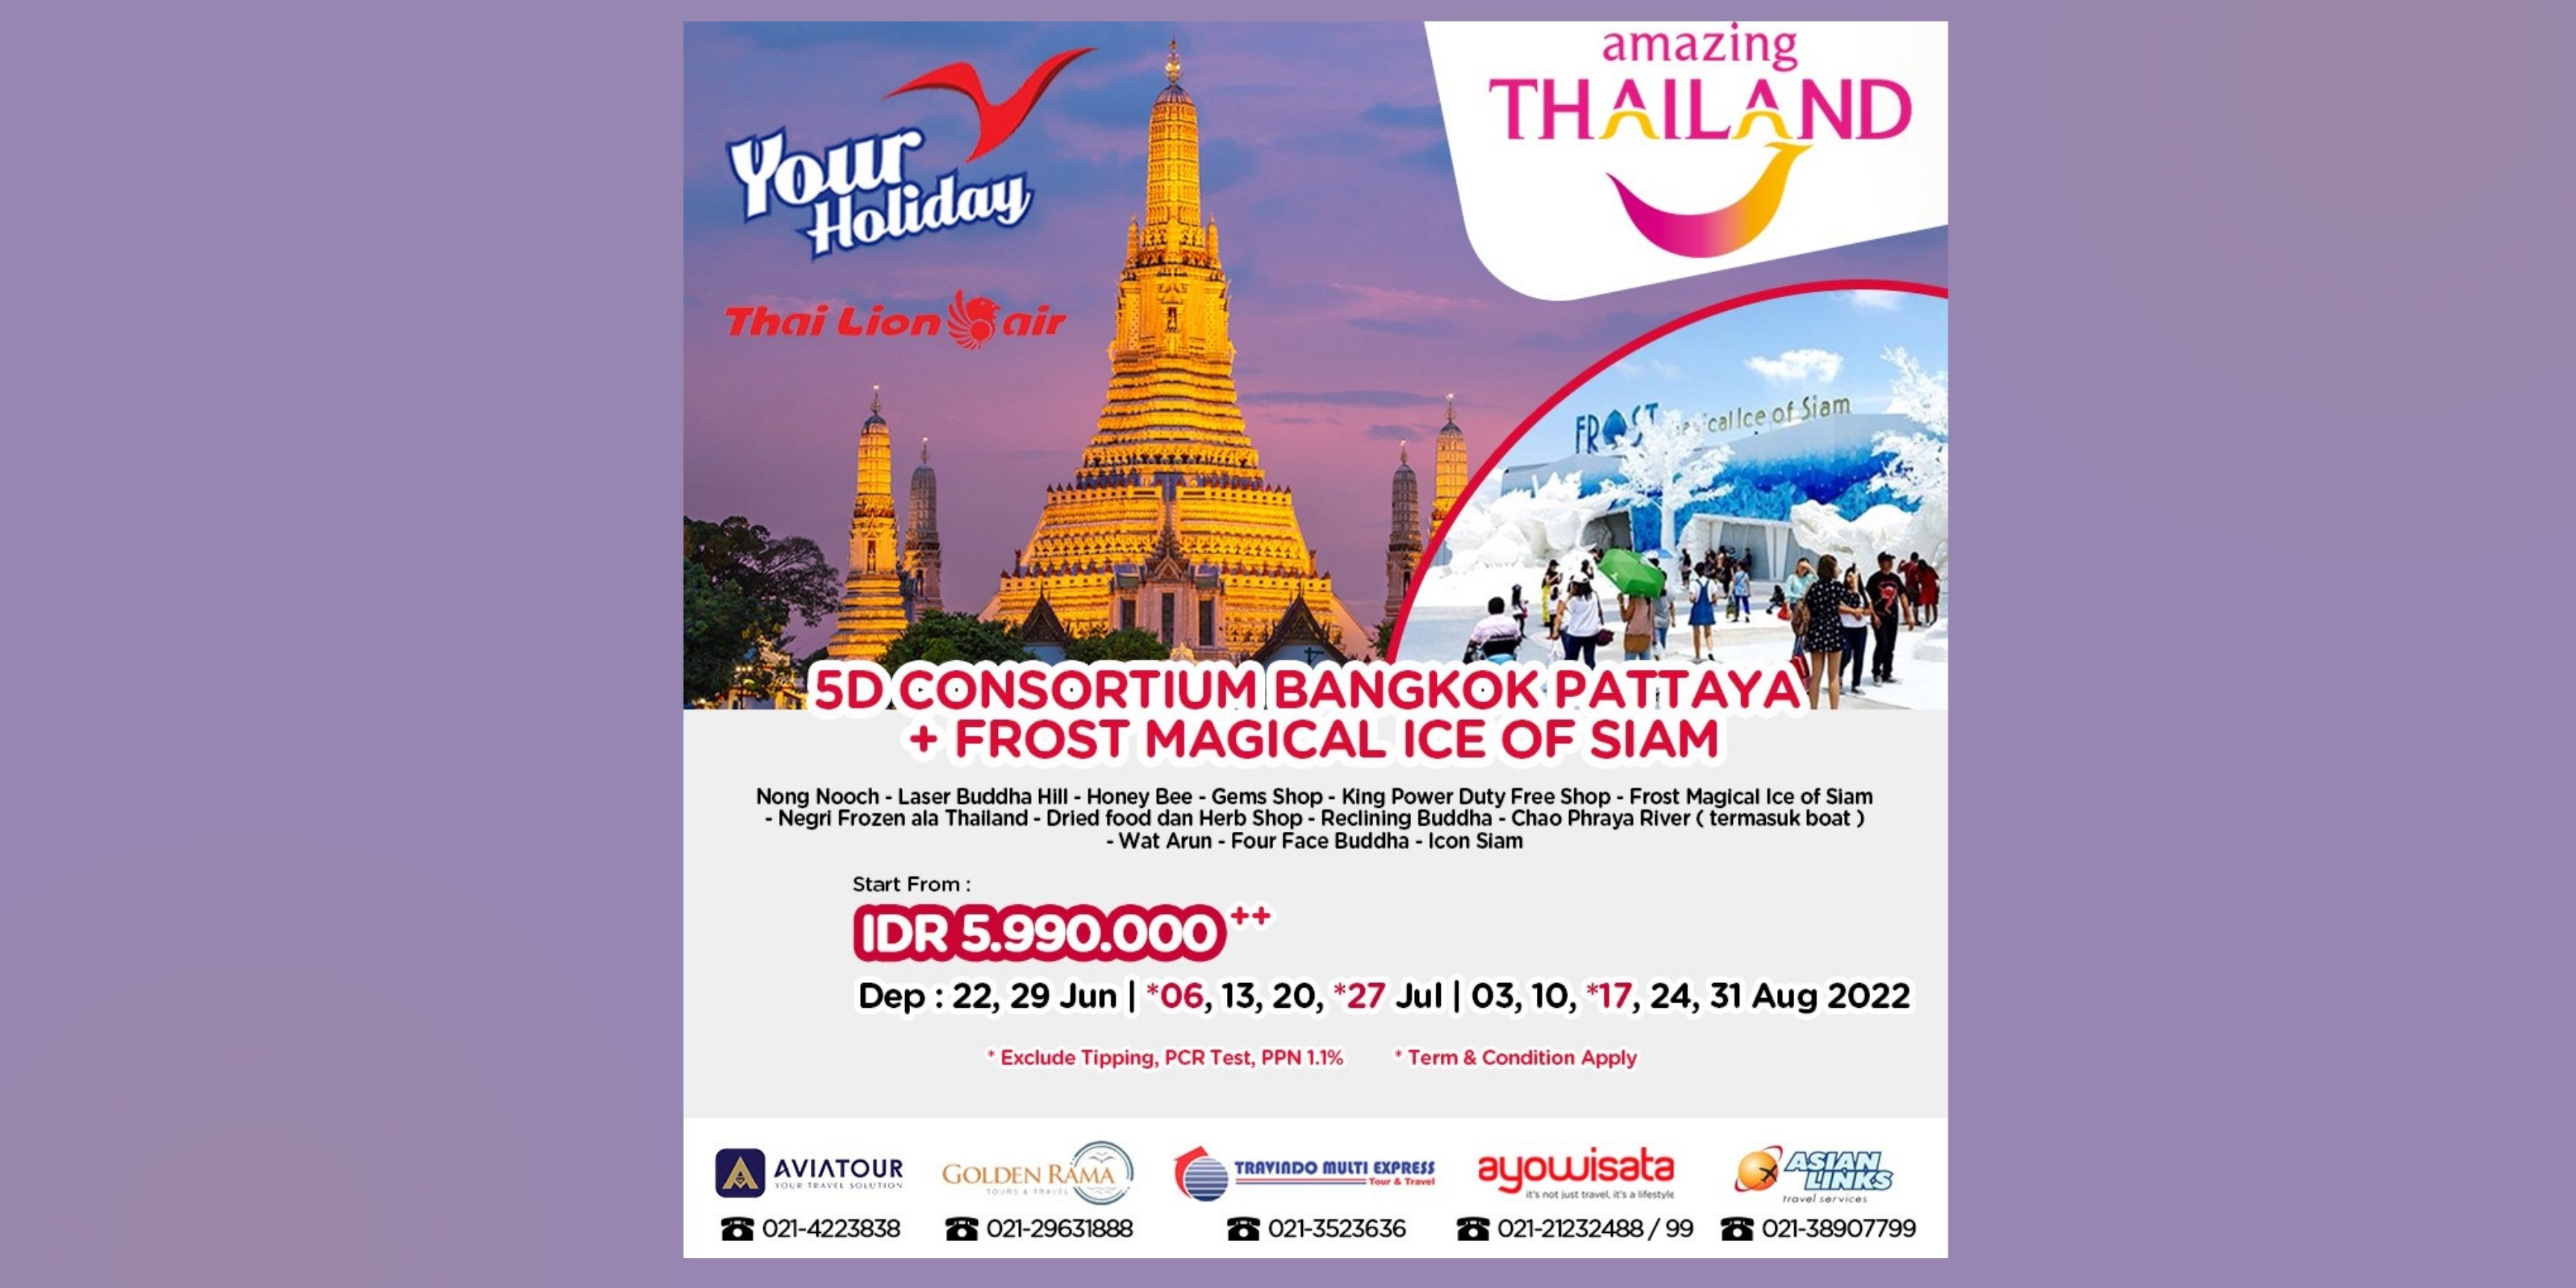 Paket Tour Thailand